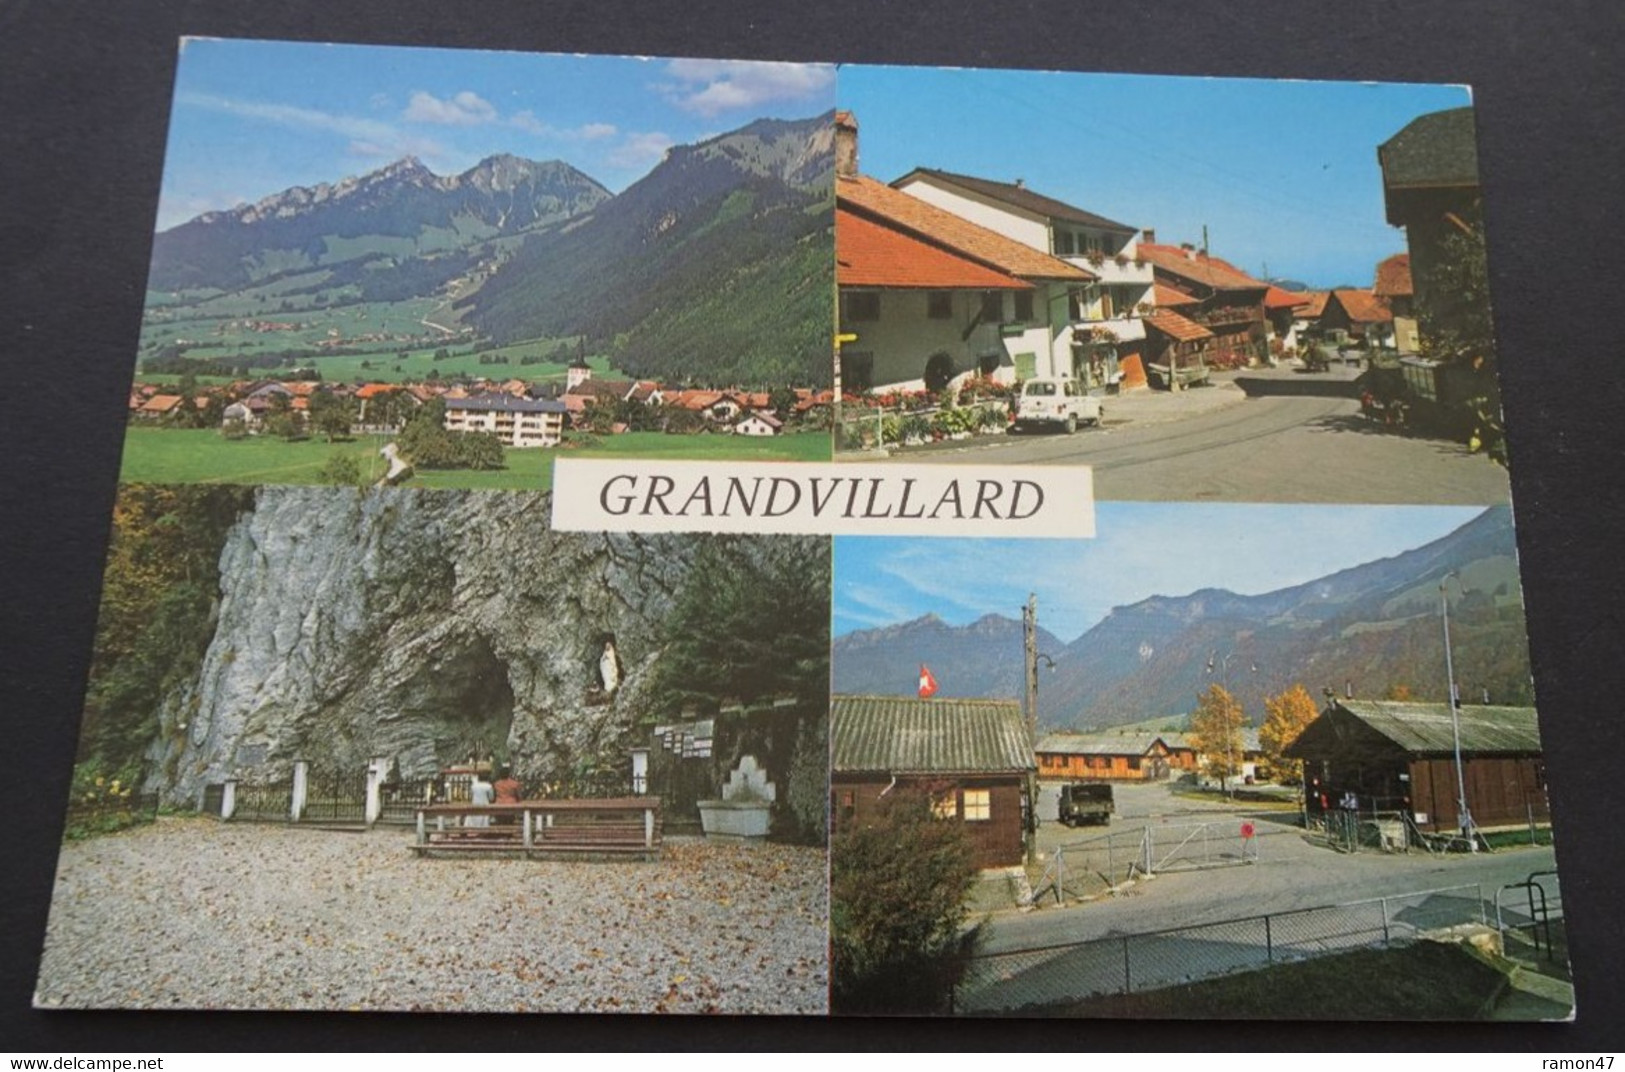 Grandvillard - Grandvillard